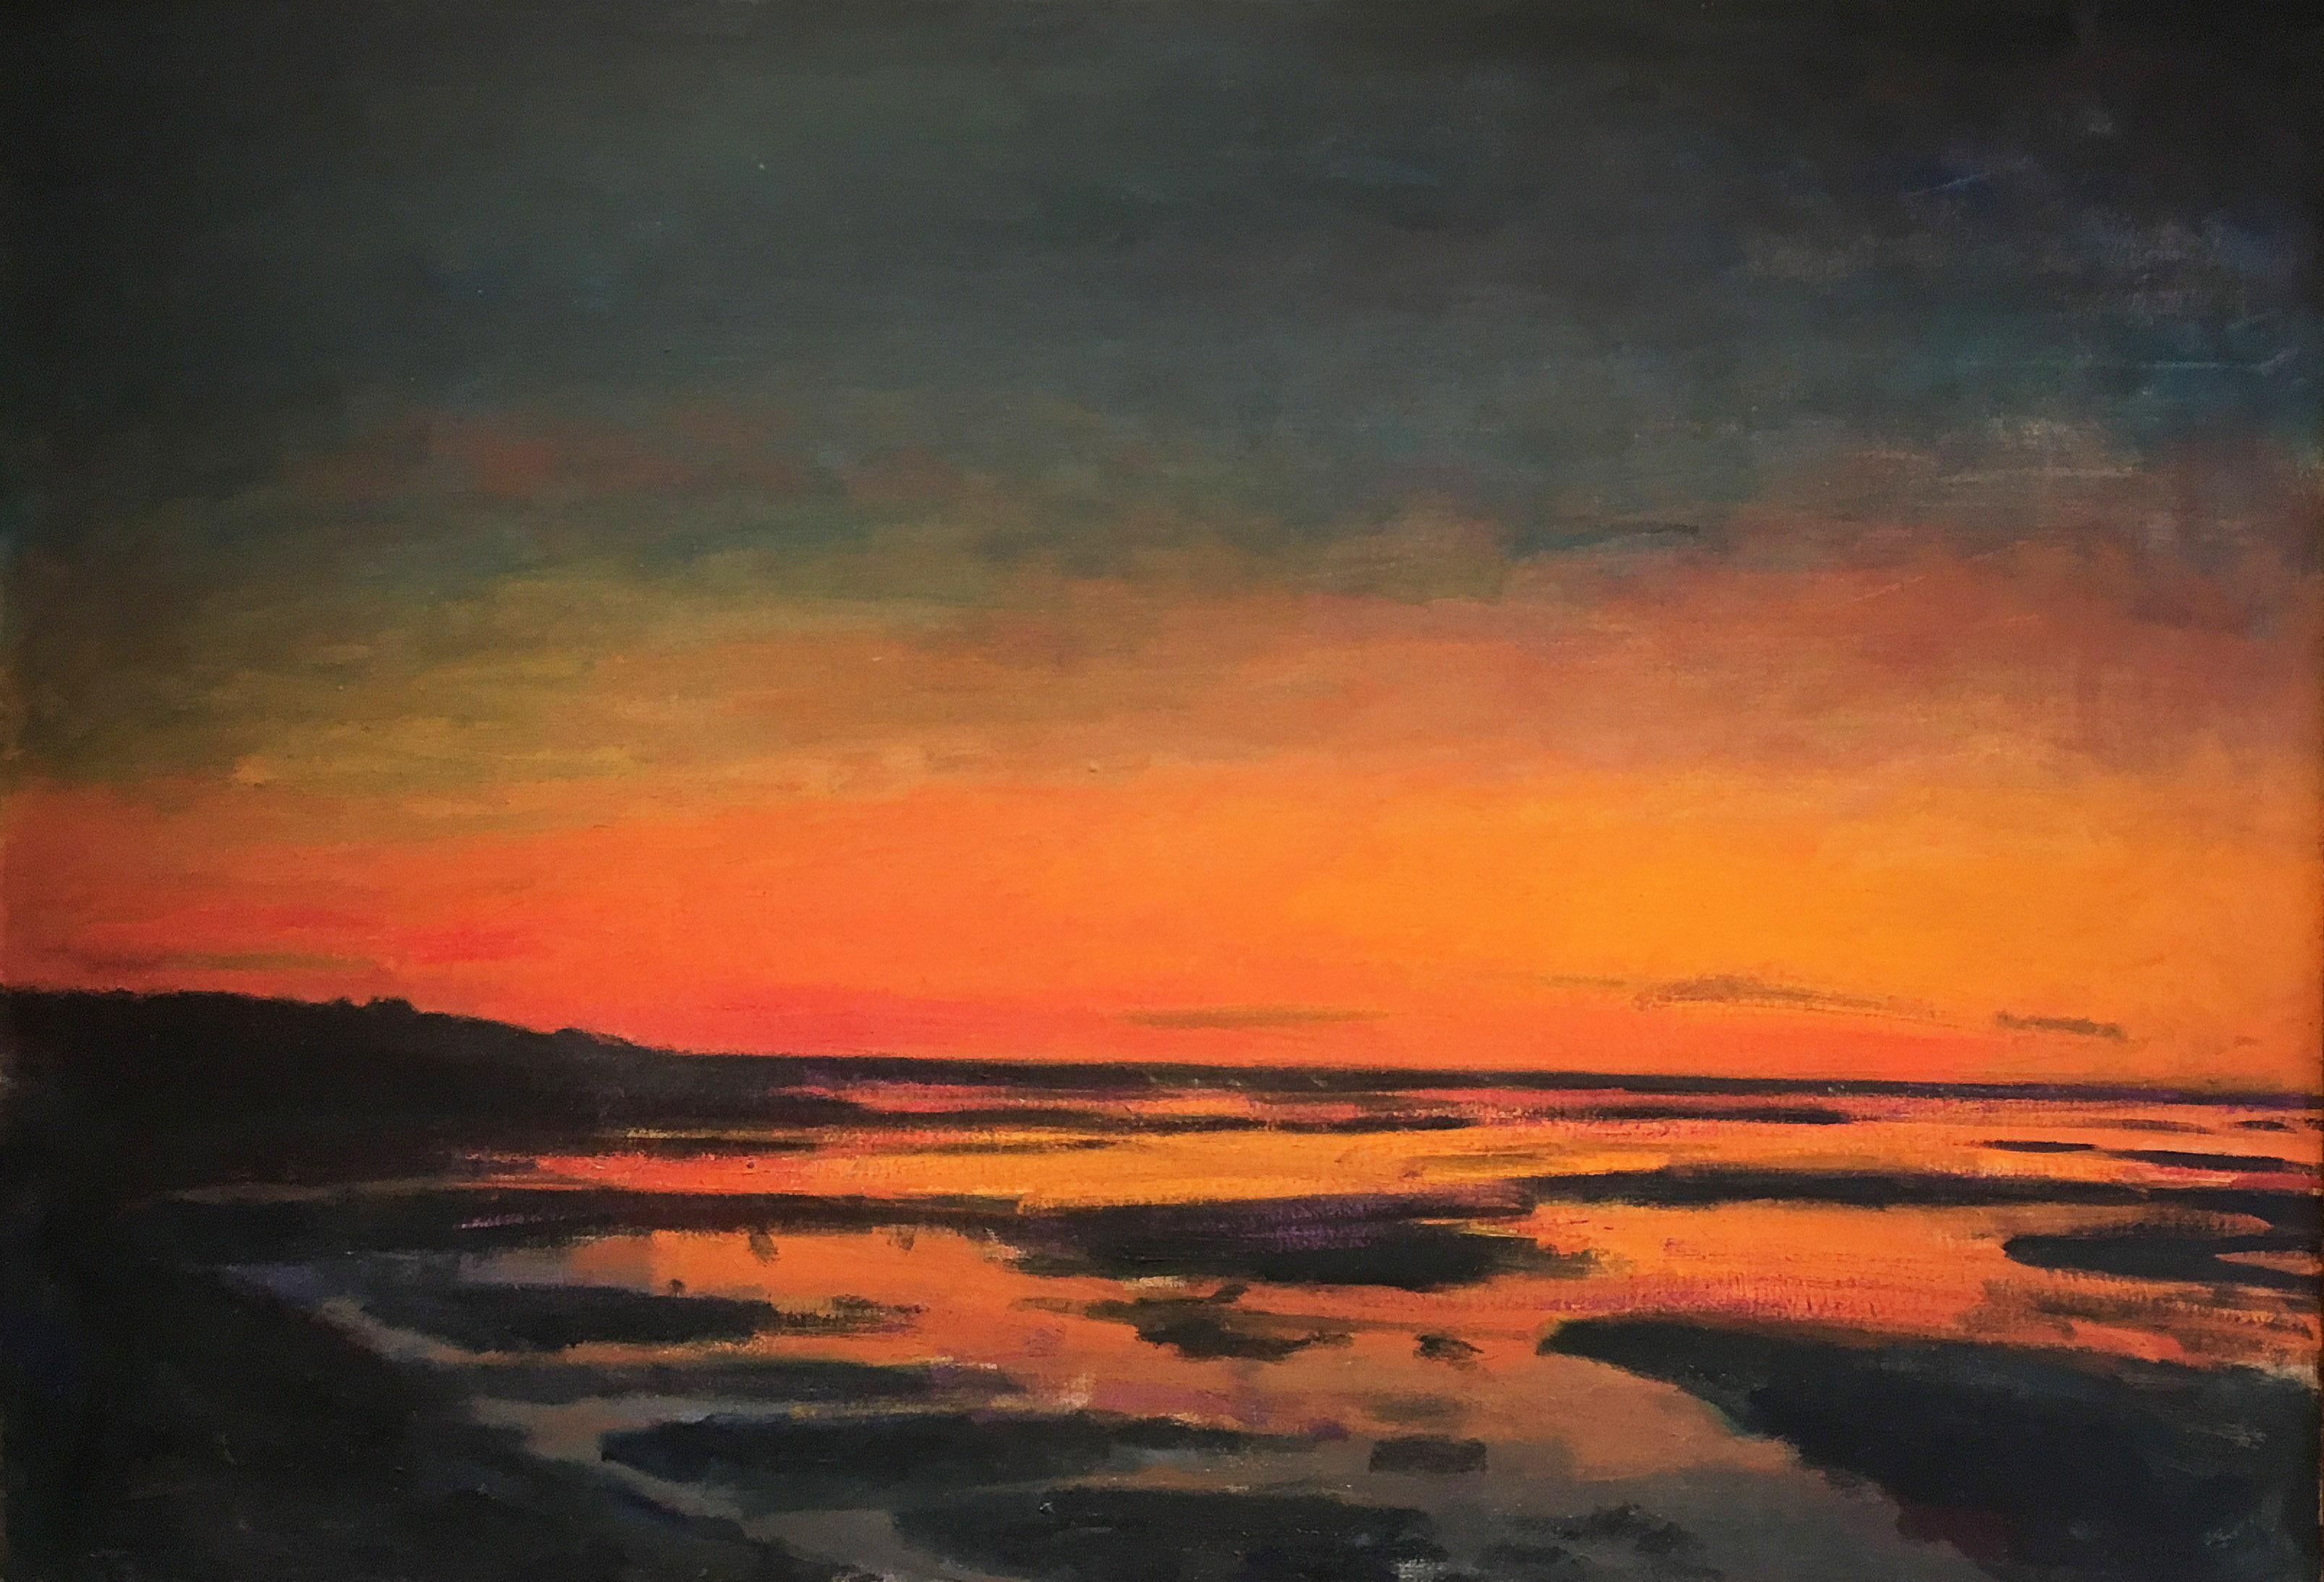 sunset Marsh" 1995 von dem zeitgenössischen amerikanischen impressionistischen Landschaftsmaler Larry Horowitz. Öl auf Leinwand, 36 x 52 cm. Dieses Gemälde zeigt eine impressionistische Landschaft mit Himmel und Küste in satten Farben von Orange,